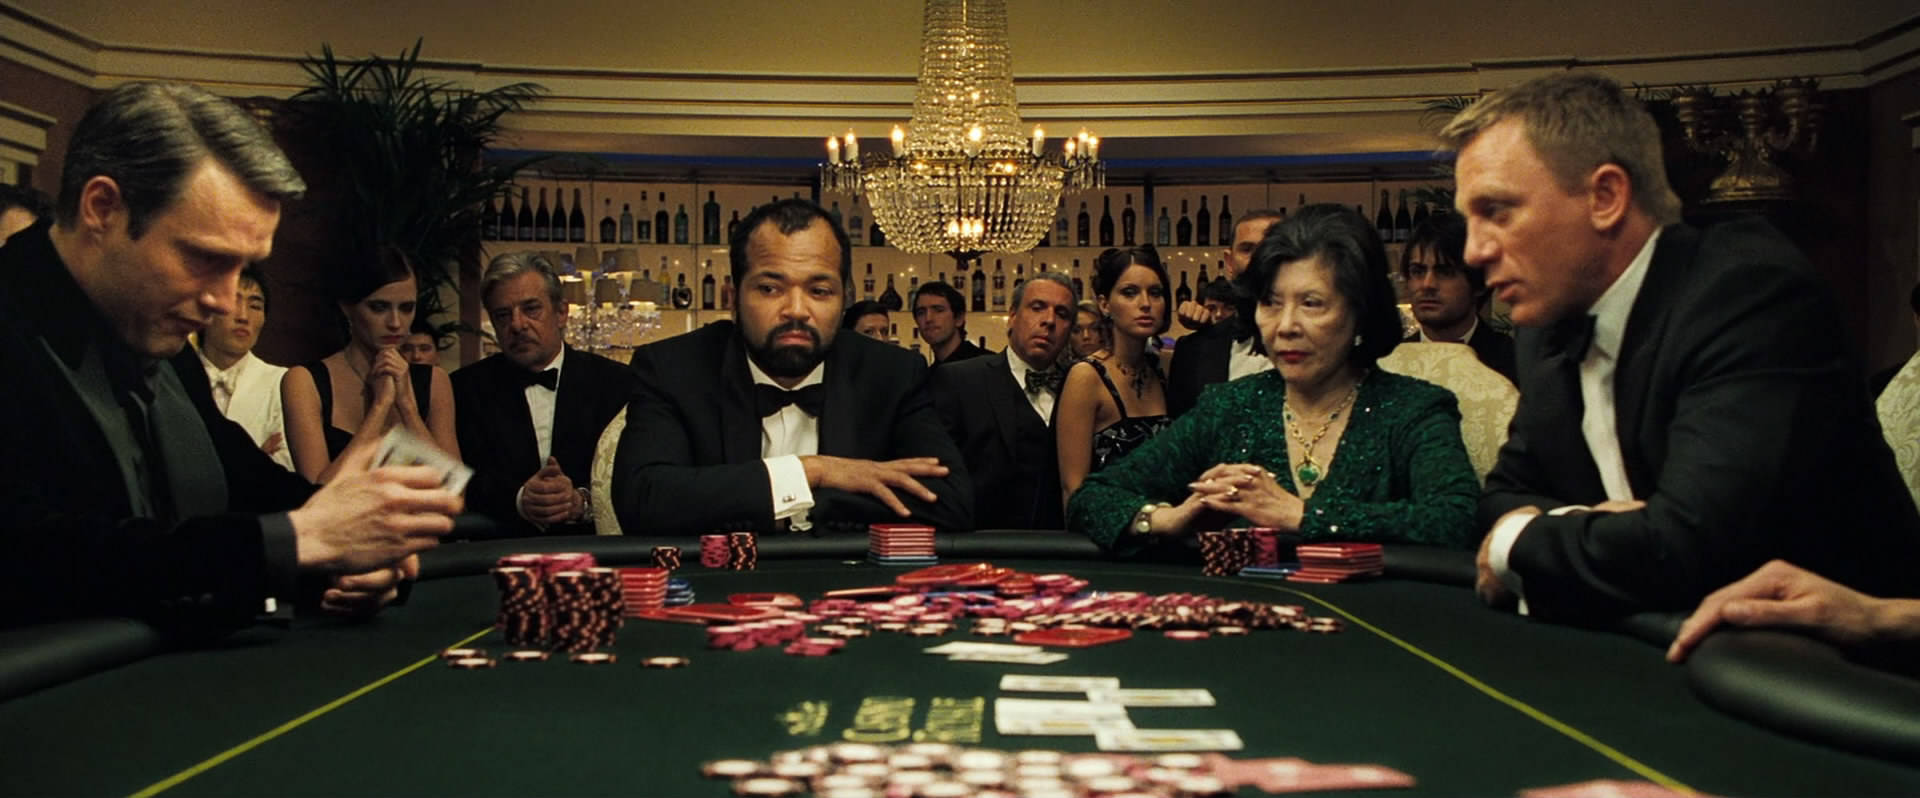 Rige Mennesker, Der Spiller På Pokerbordet Wallpaper